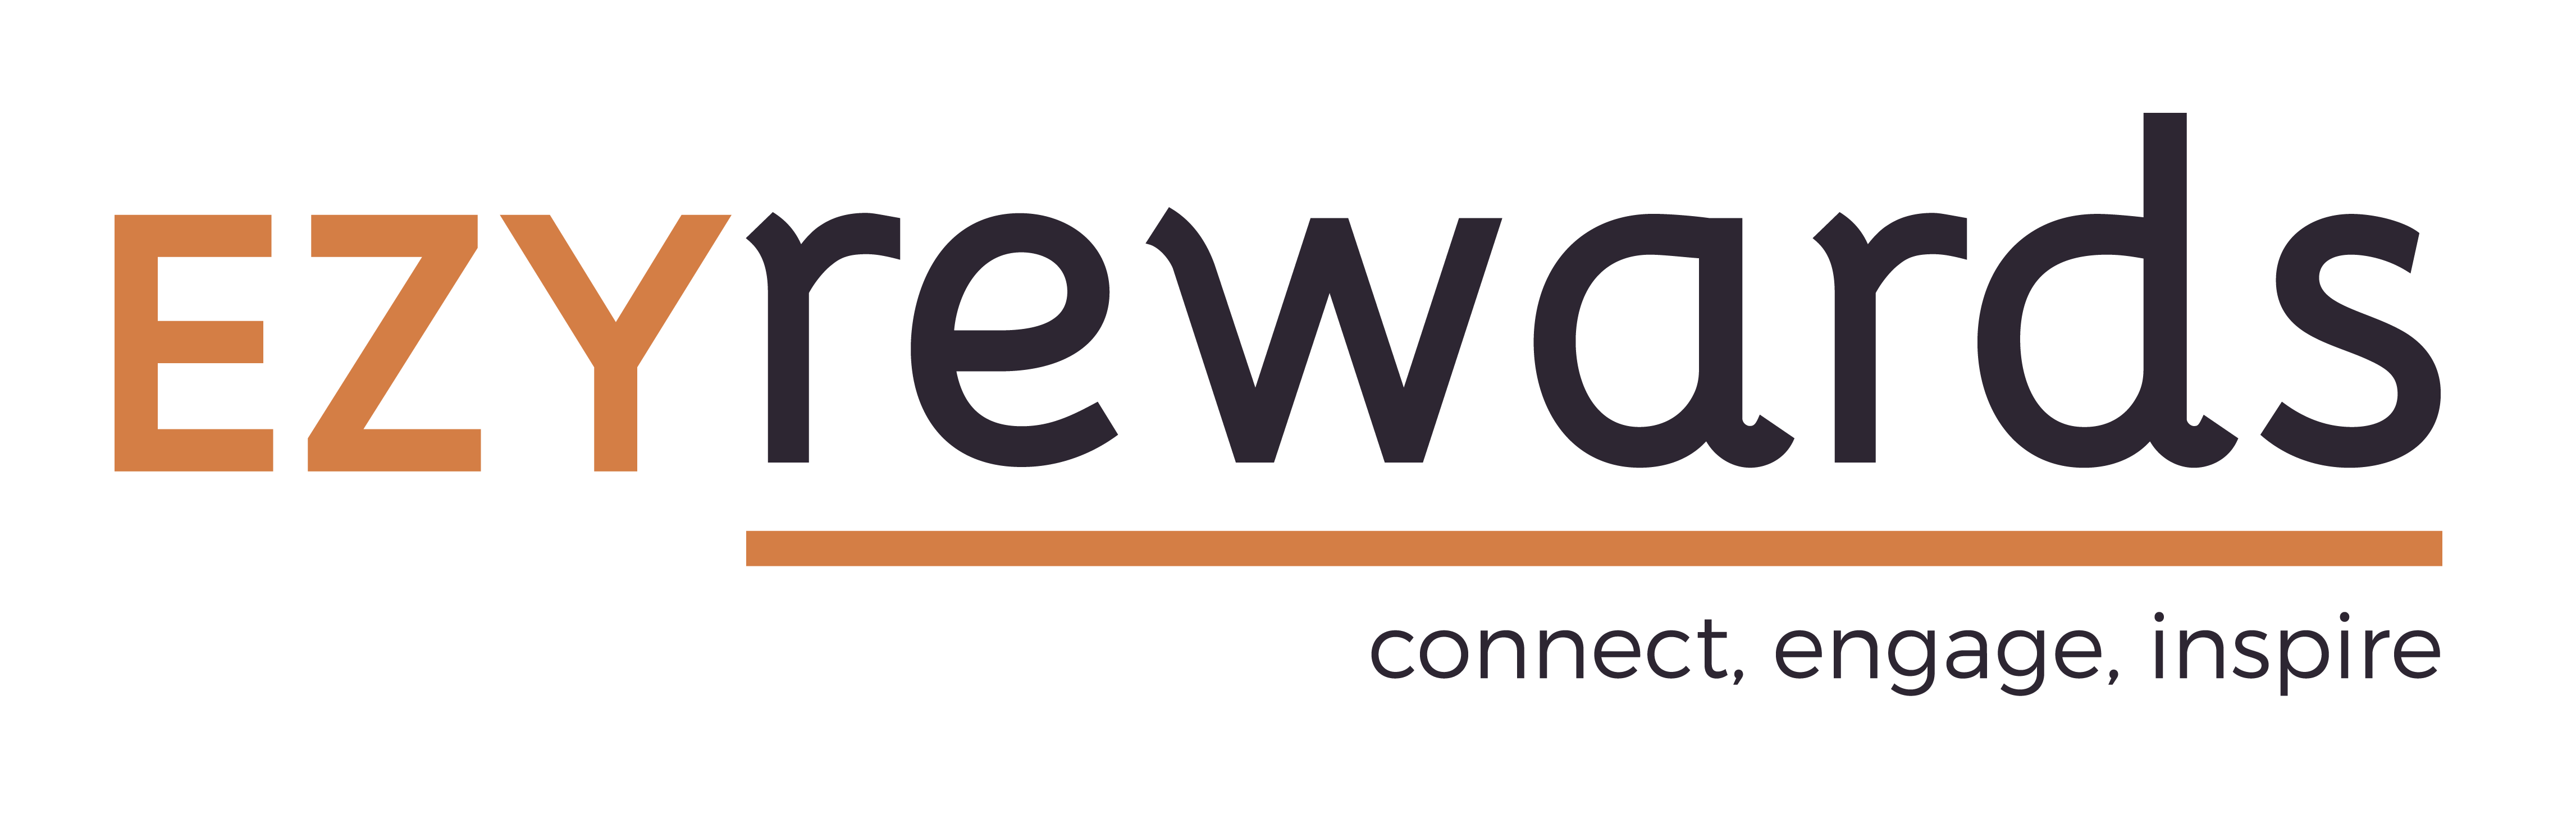 EzyRewards Logo